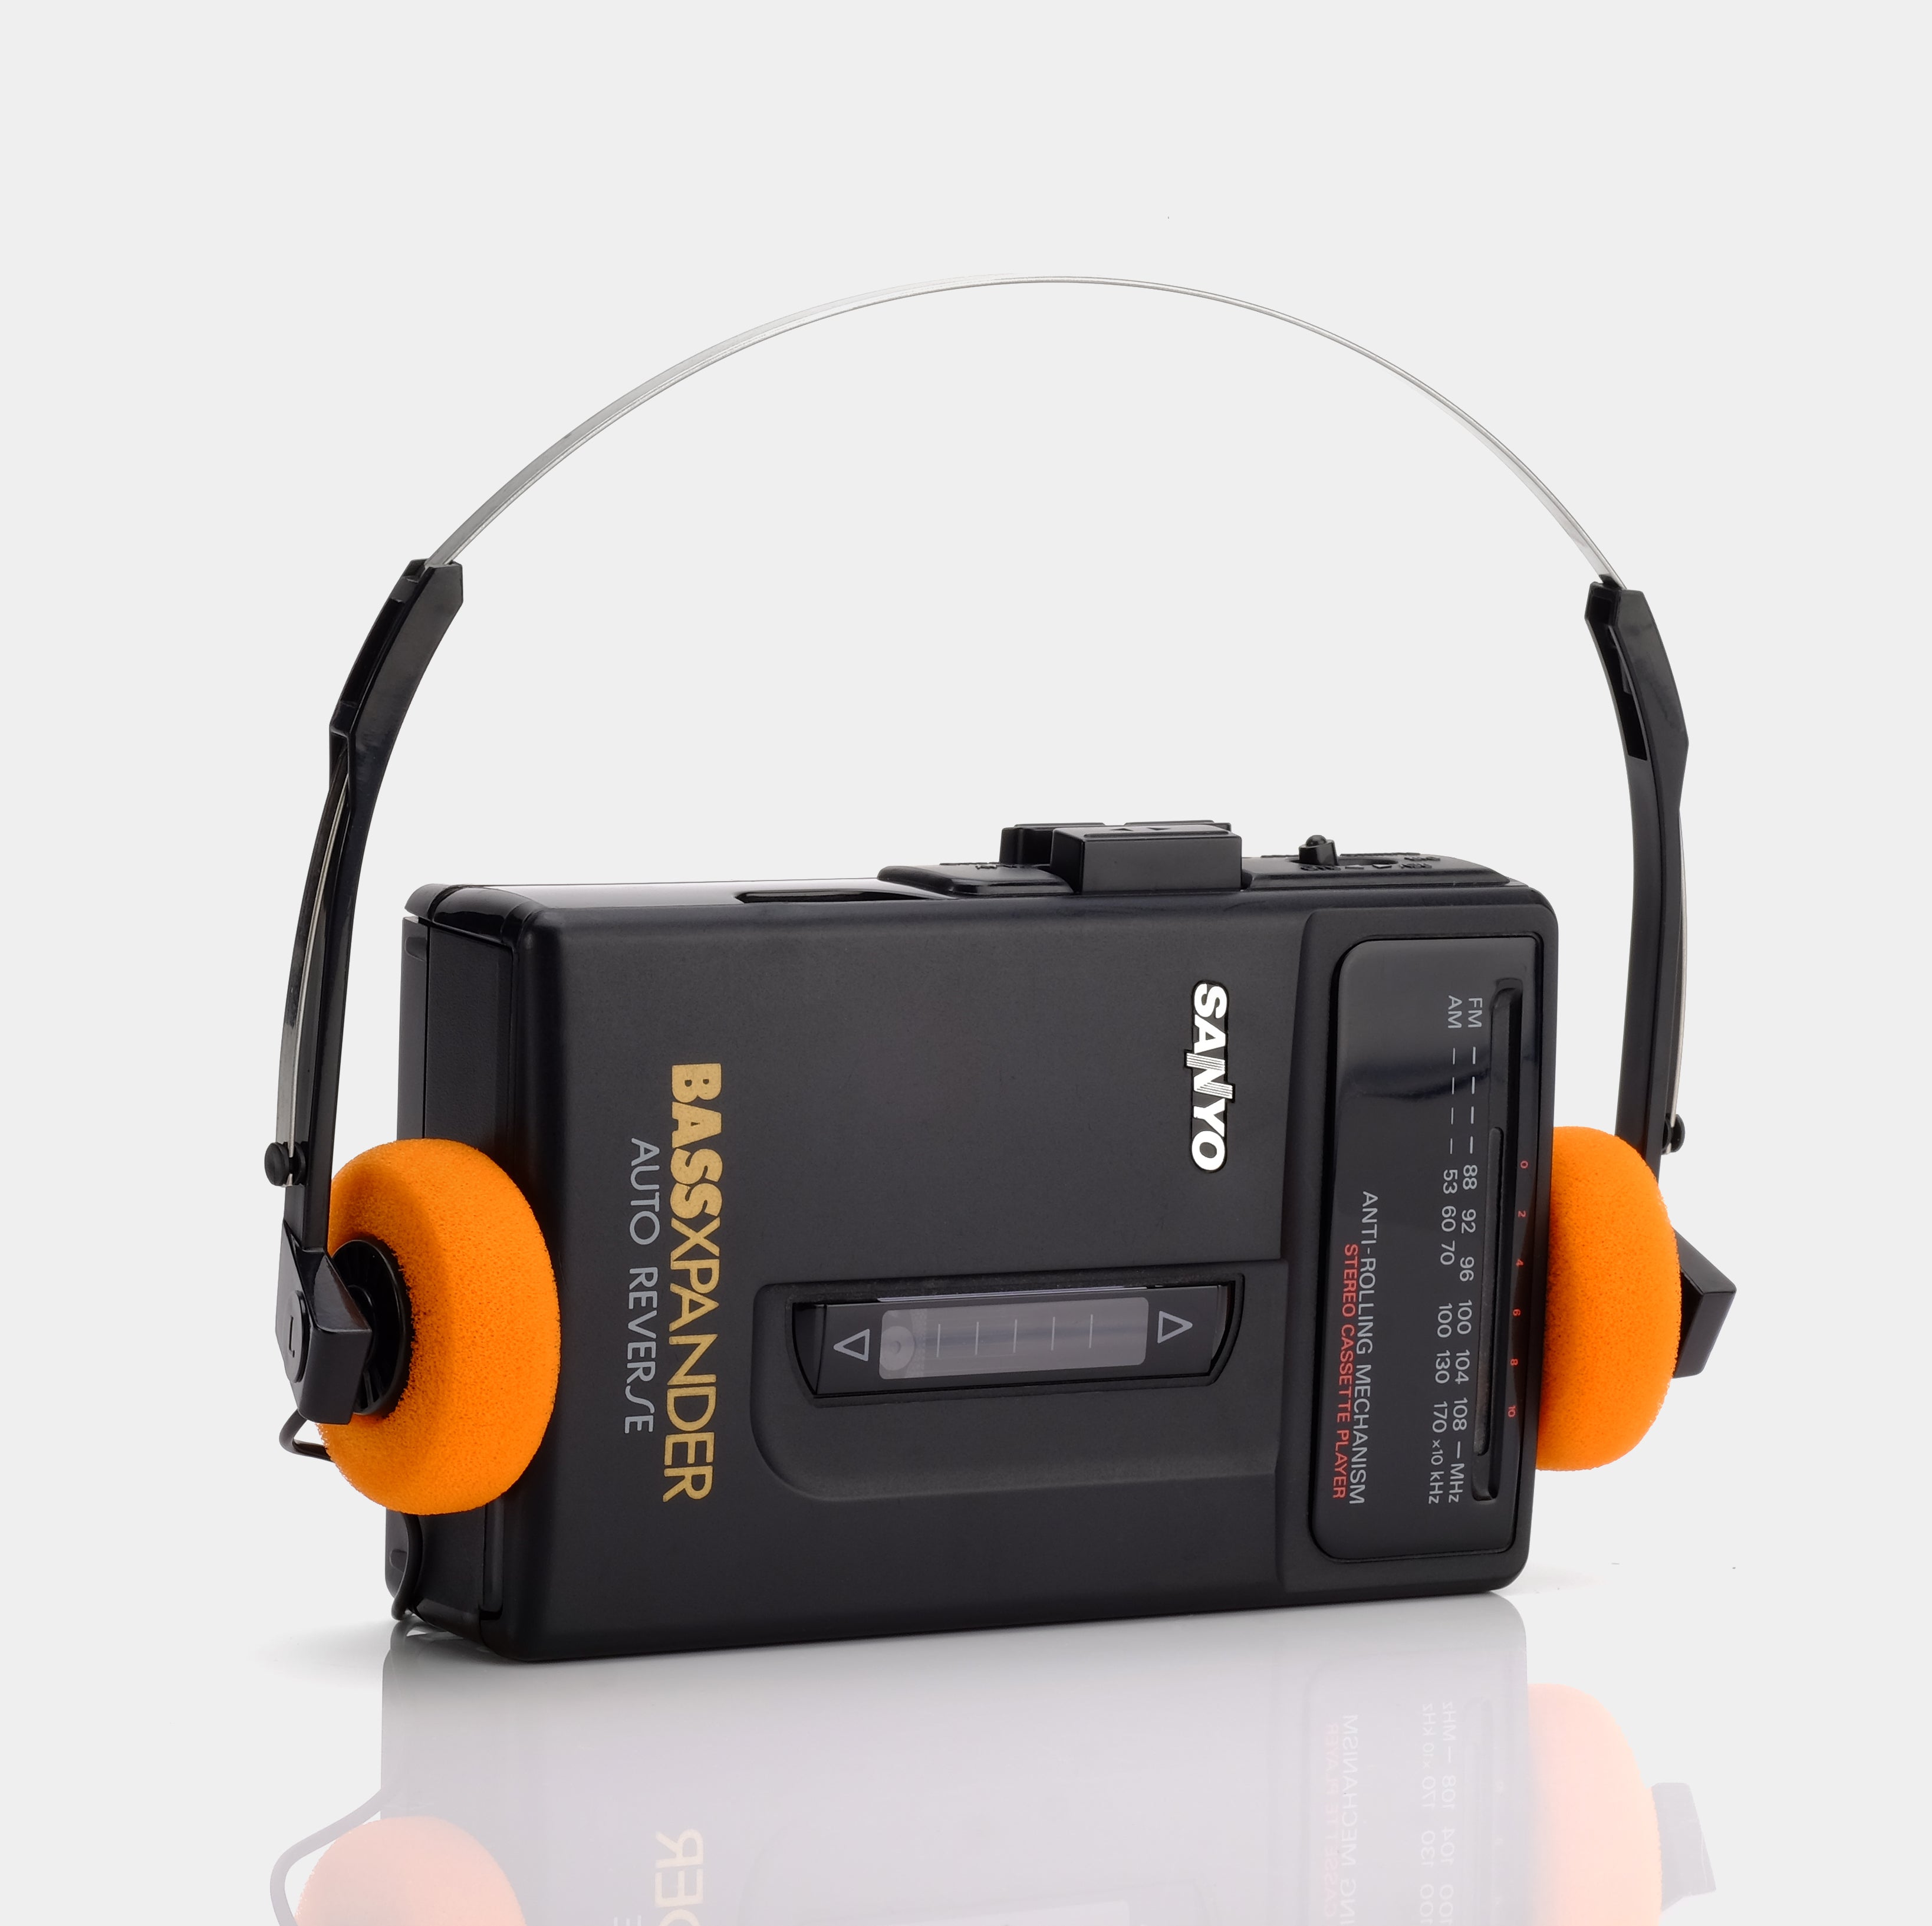 Sanyo BASSXPANDER MGR-703 Auto Reverse AM/FM Portable Cassette Player